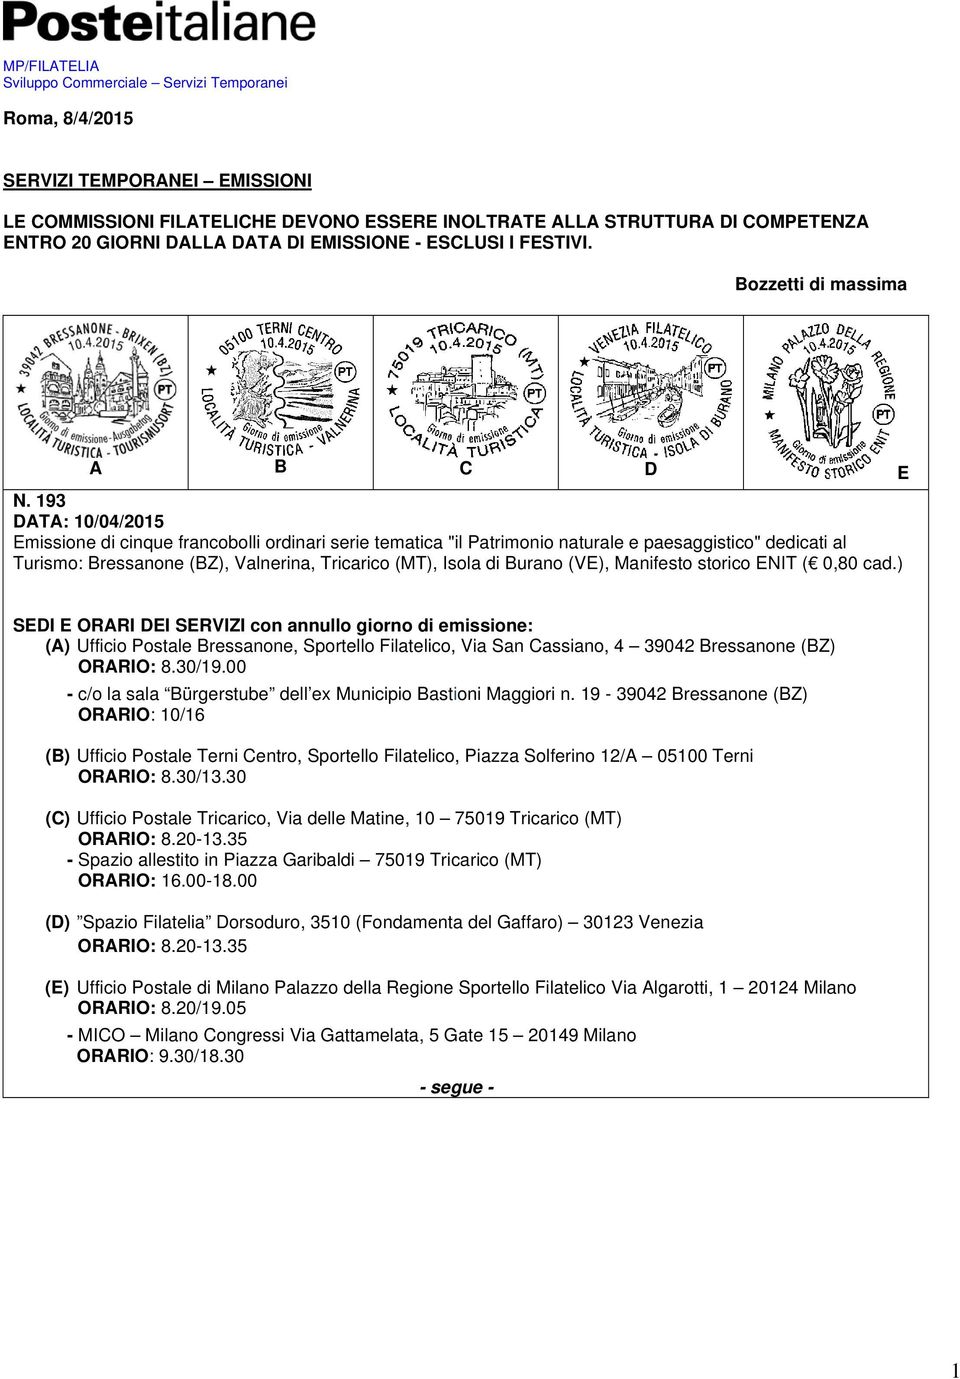 193 DATA: 10/04/2015 Emissione di cinque francobolli ordinari serie tematica "il Patrimonio naturale e paesaggistico" dedicati al Turismo: Bressanone (BZ), Valnerina, Tricarico (MT), Isola di Burano